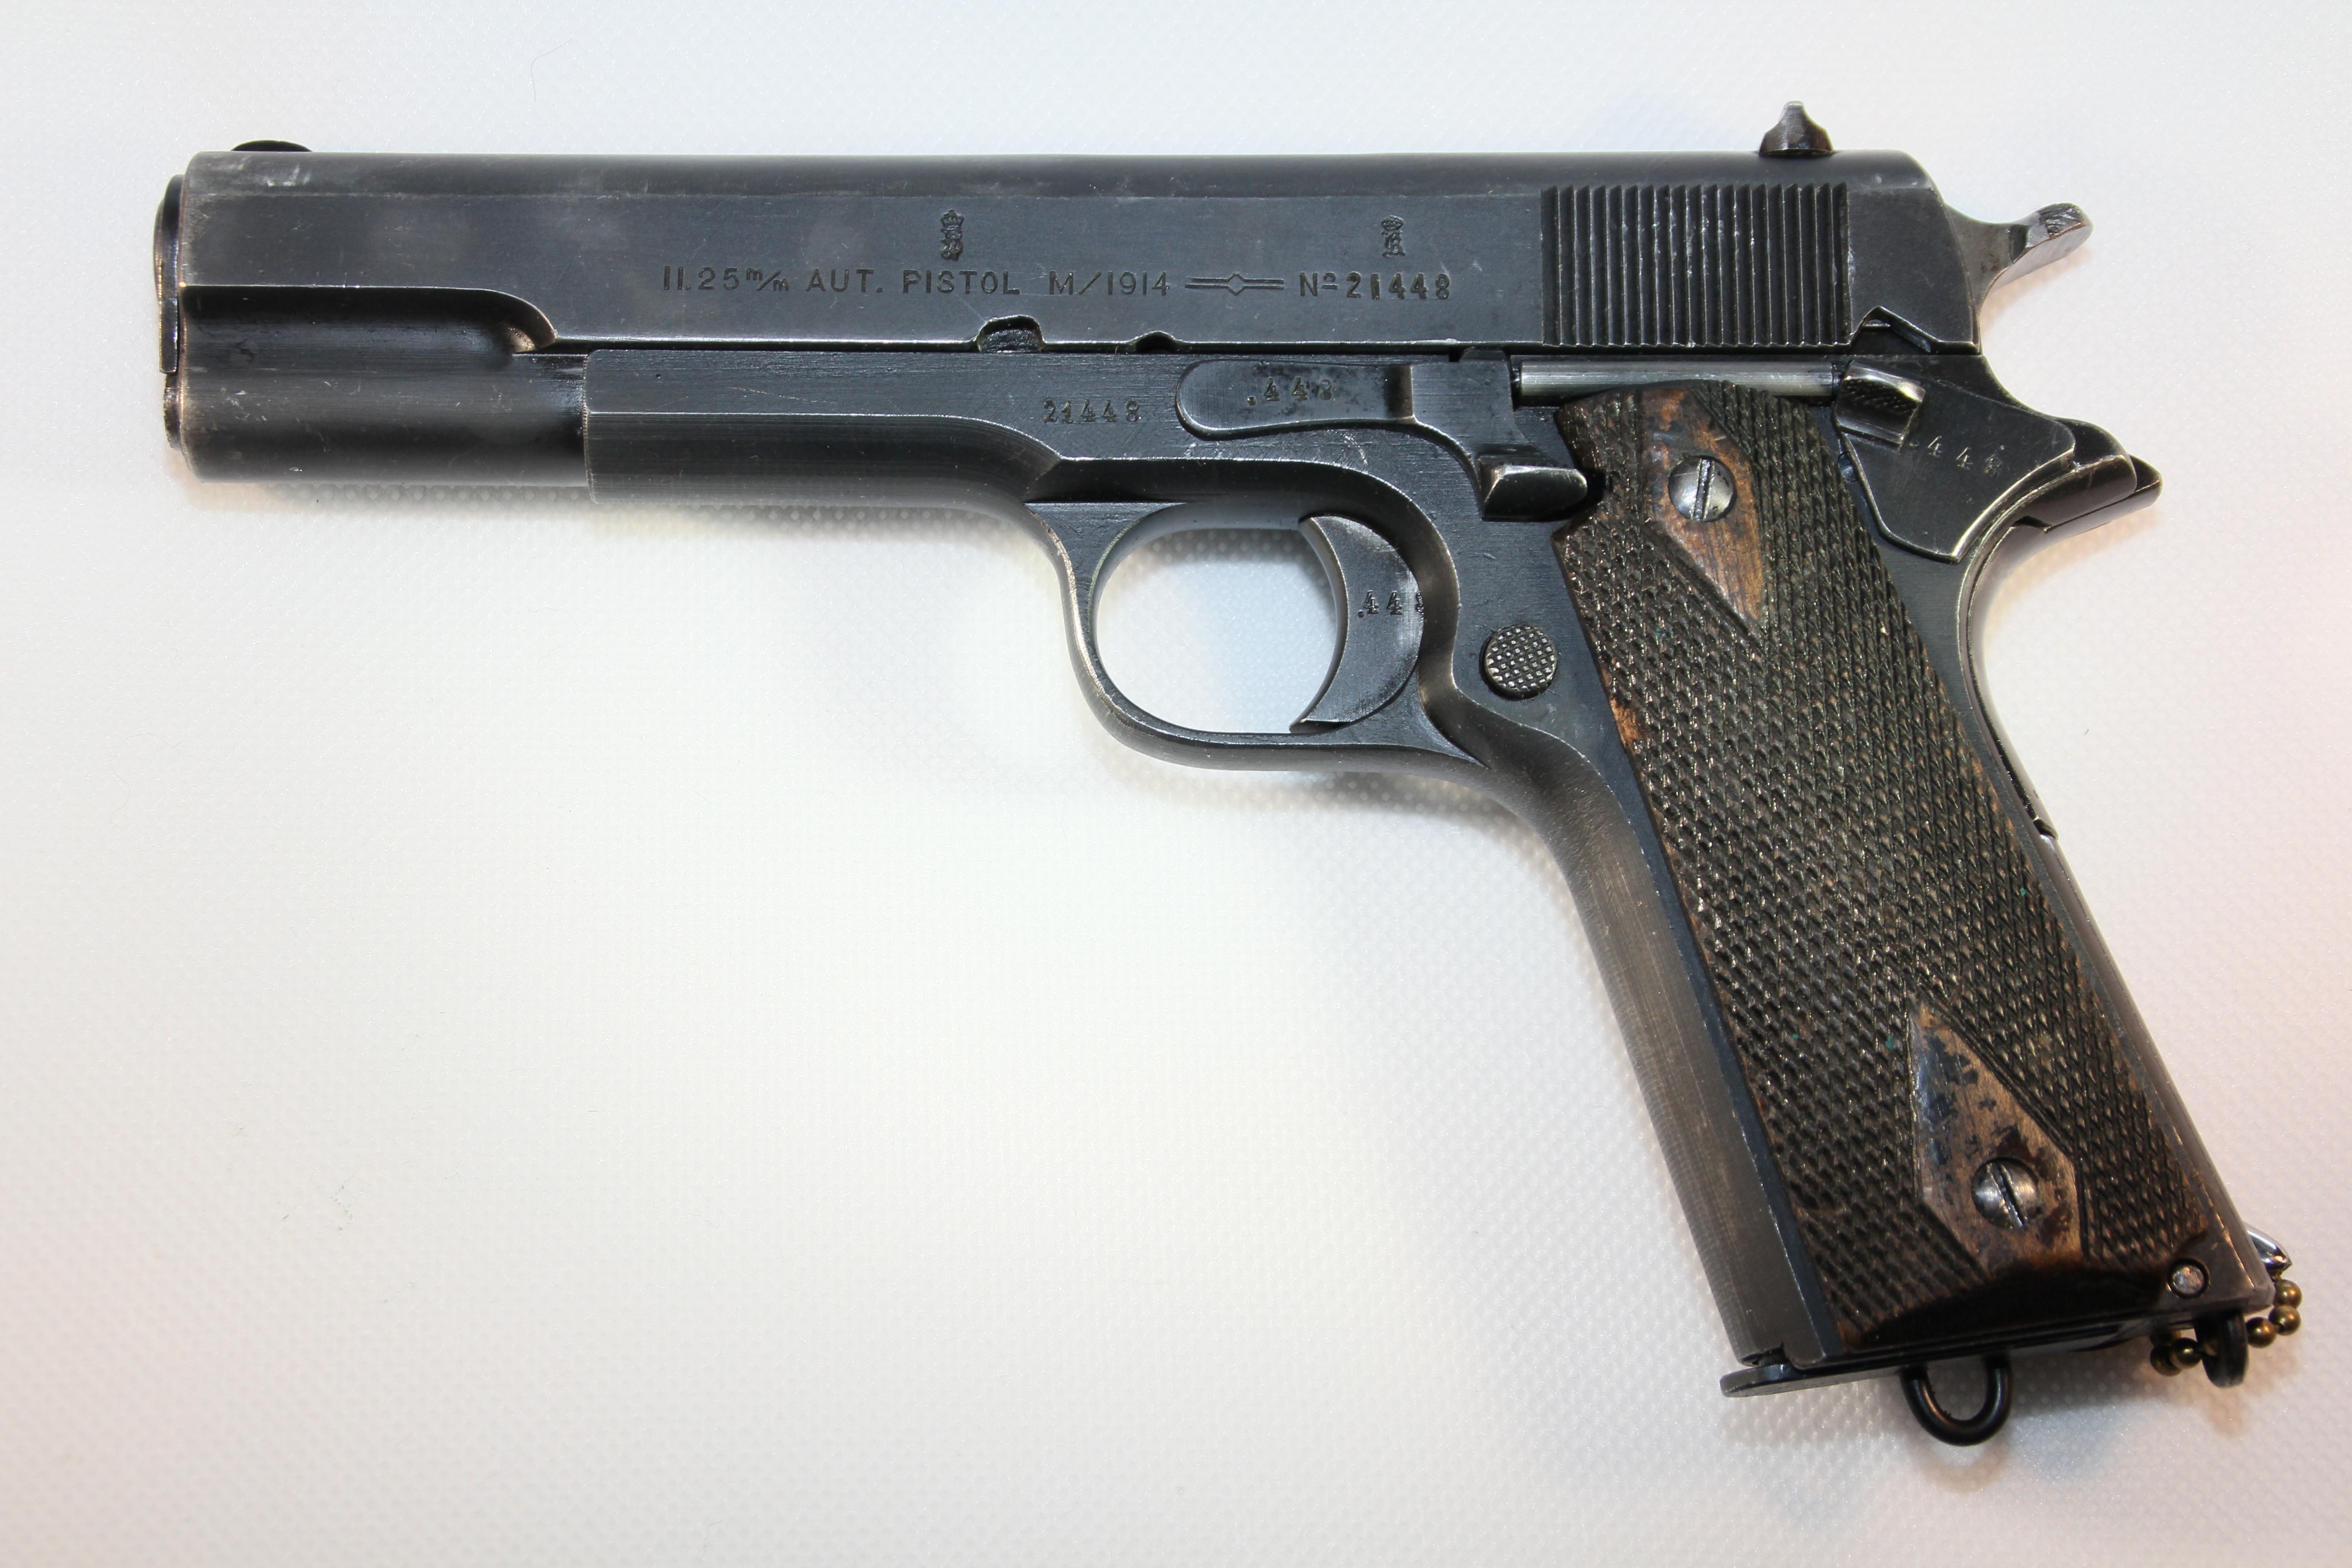 ./guns/pistol/bilder/Pistol-Kongsberg-M1914-1932-1.JPG